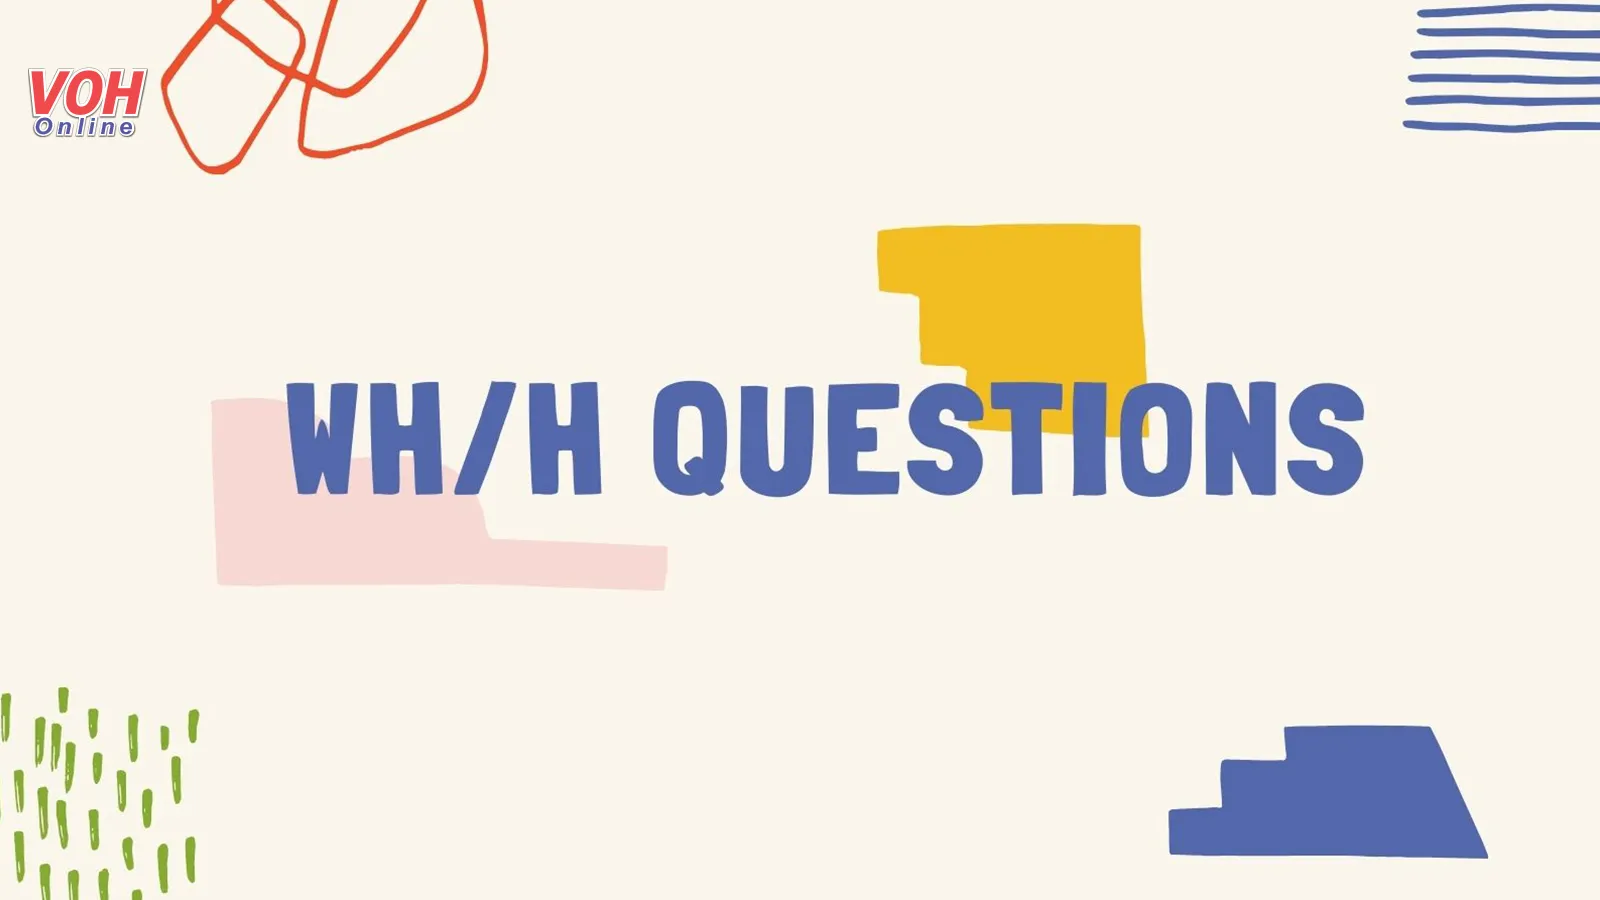 Tổng hợp các dạng câu hỏi WH/H Questions và bài tập liên quan